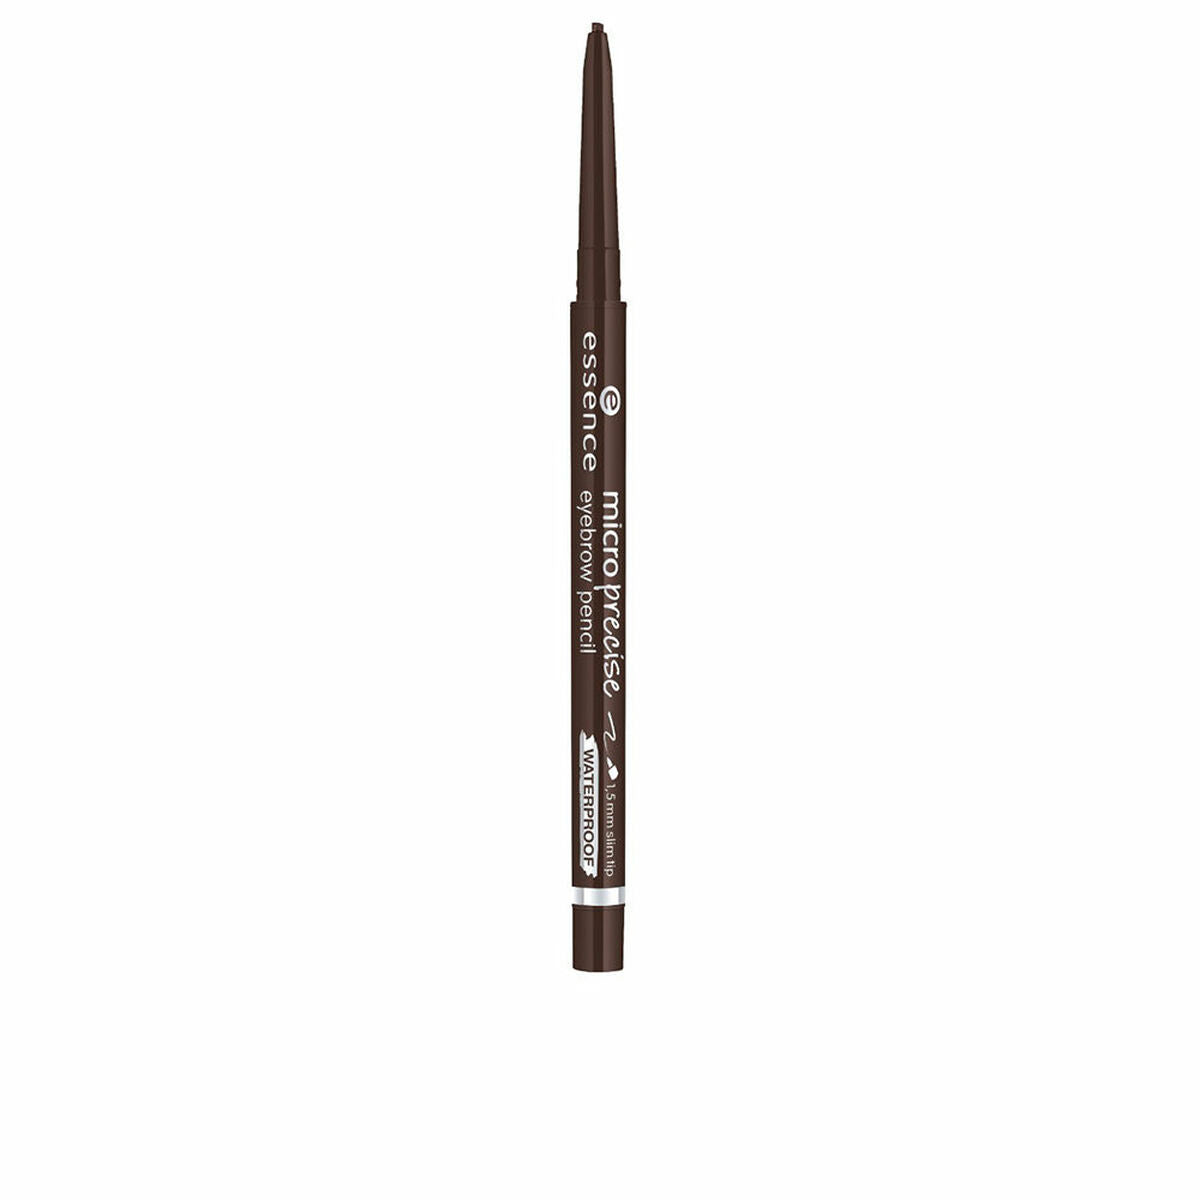 Essenza a matita per sopracciglia Micropropriale resistente all'acqua nº 03-dark marrone 0,05 g